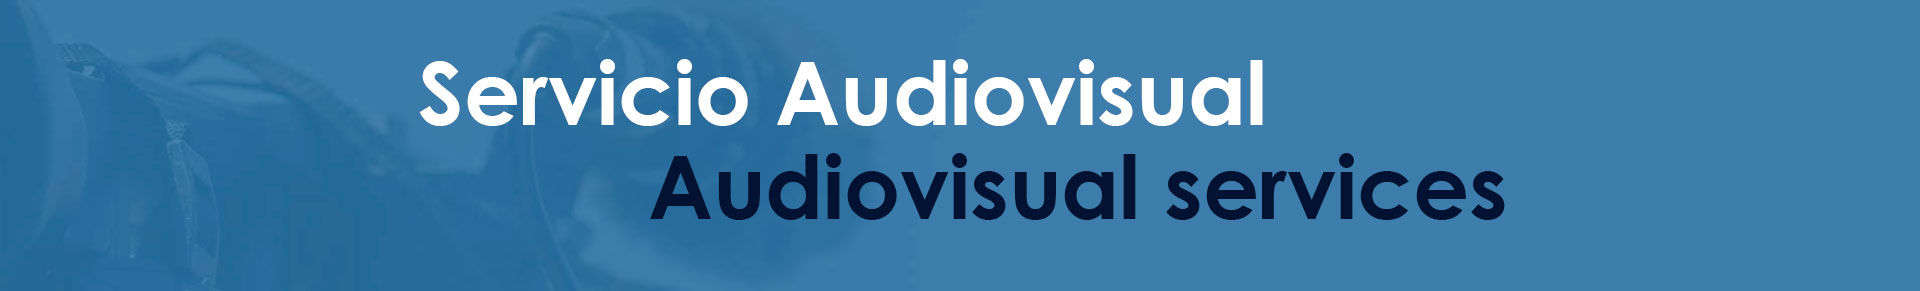 Servicio audiovisual